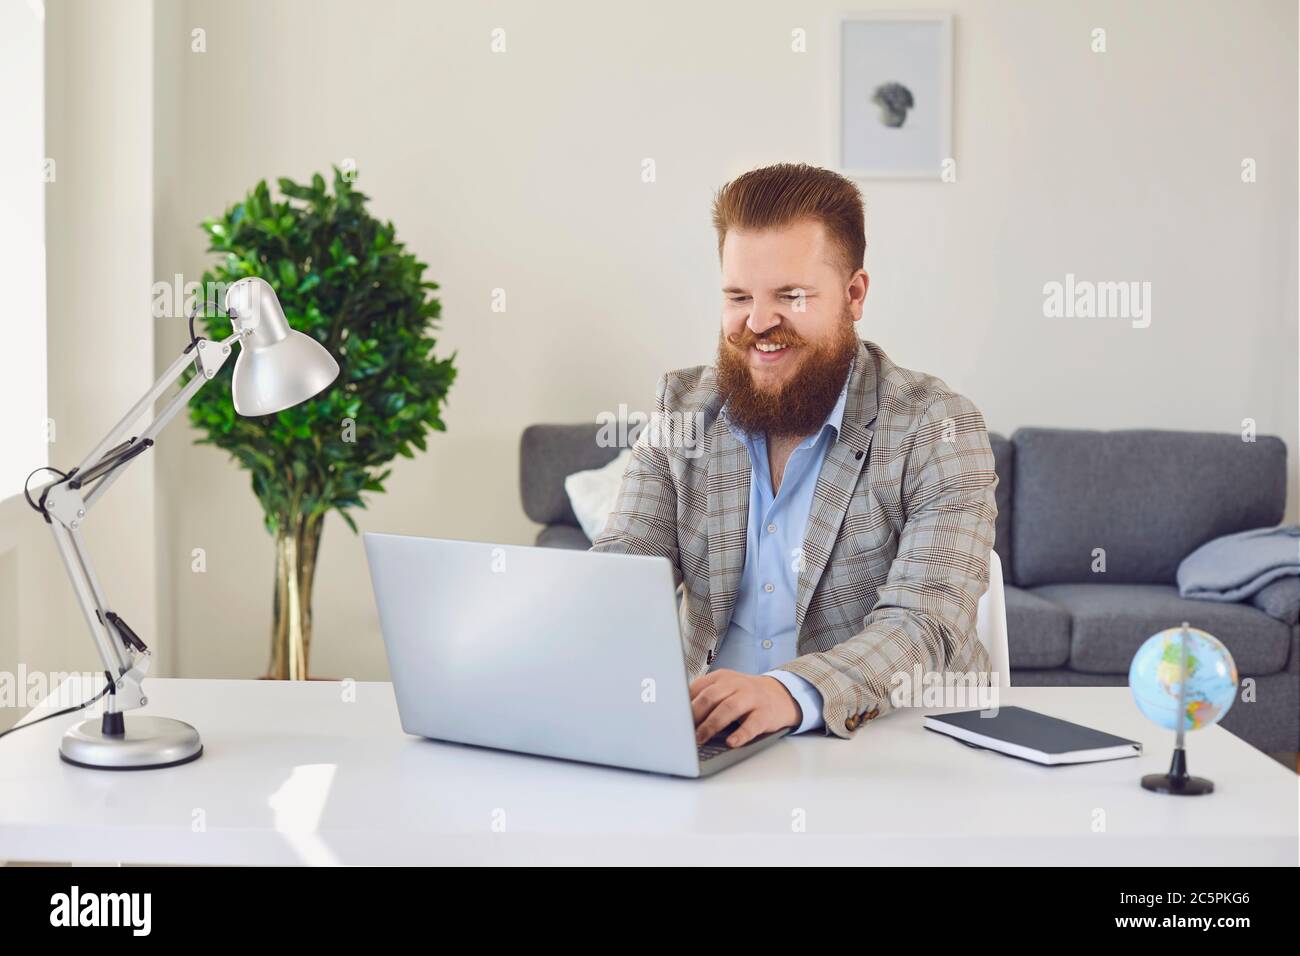 Homme travaillant en ligne à domicile.homme d'affaires de contenu tapant sur ordinateur portable. Banque D'Images